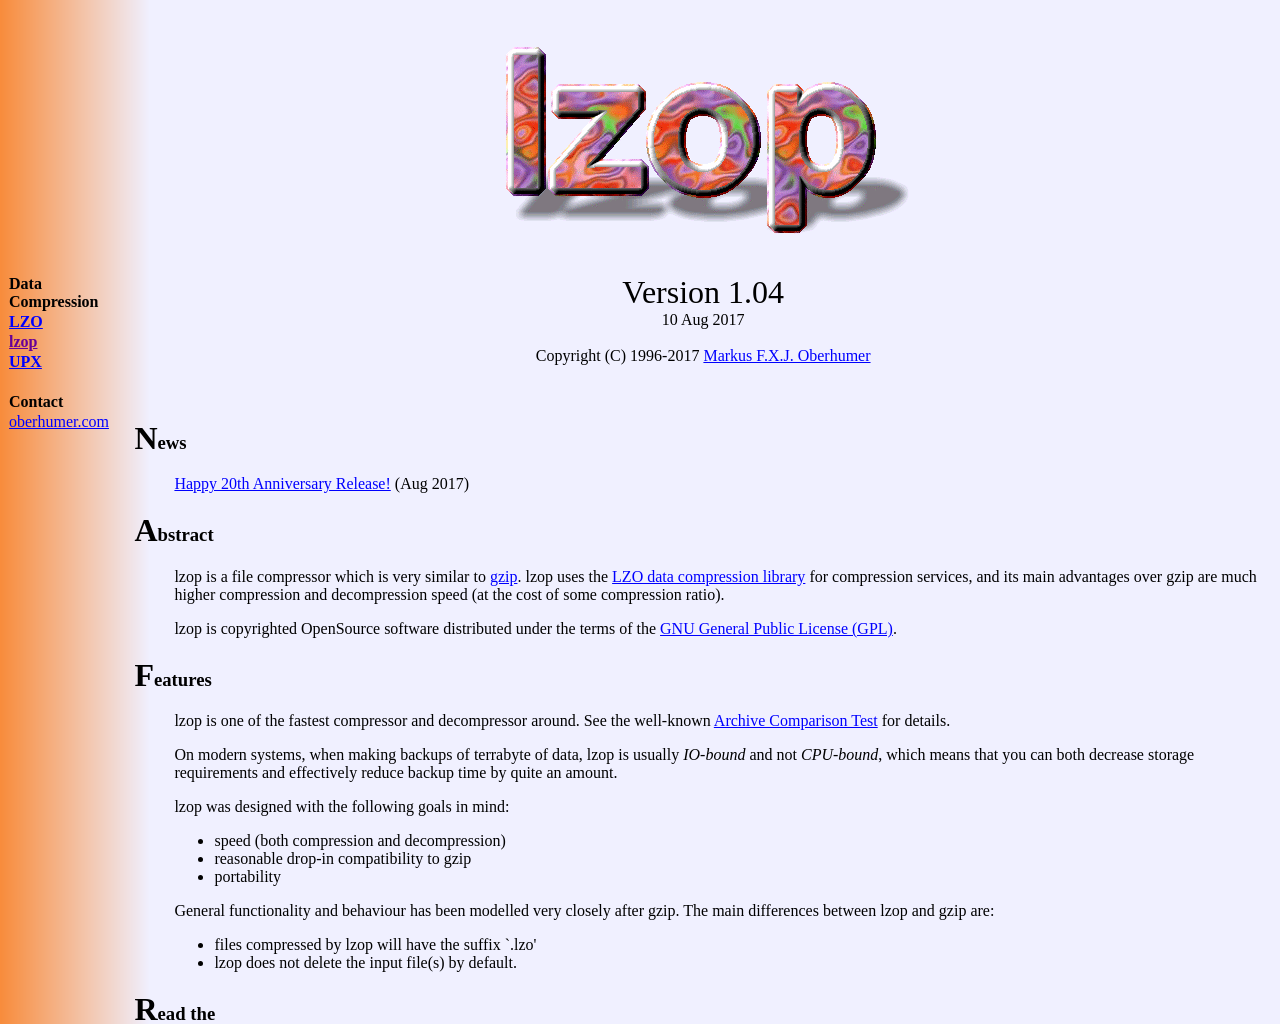 lzop.org